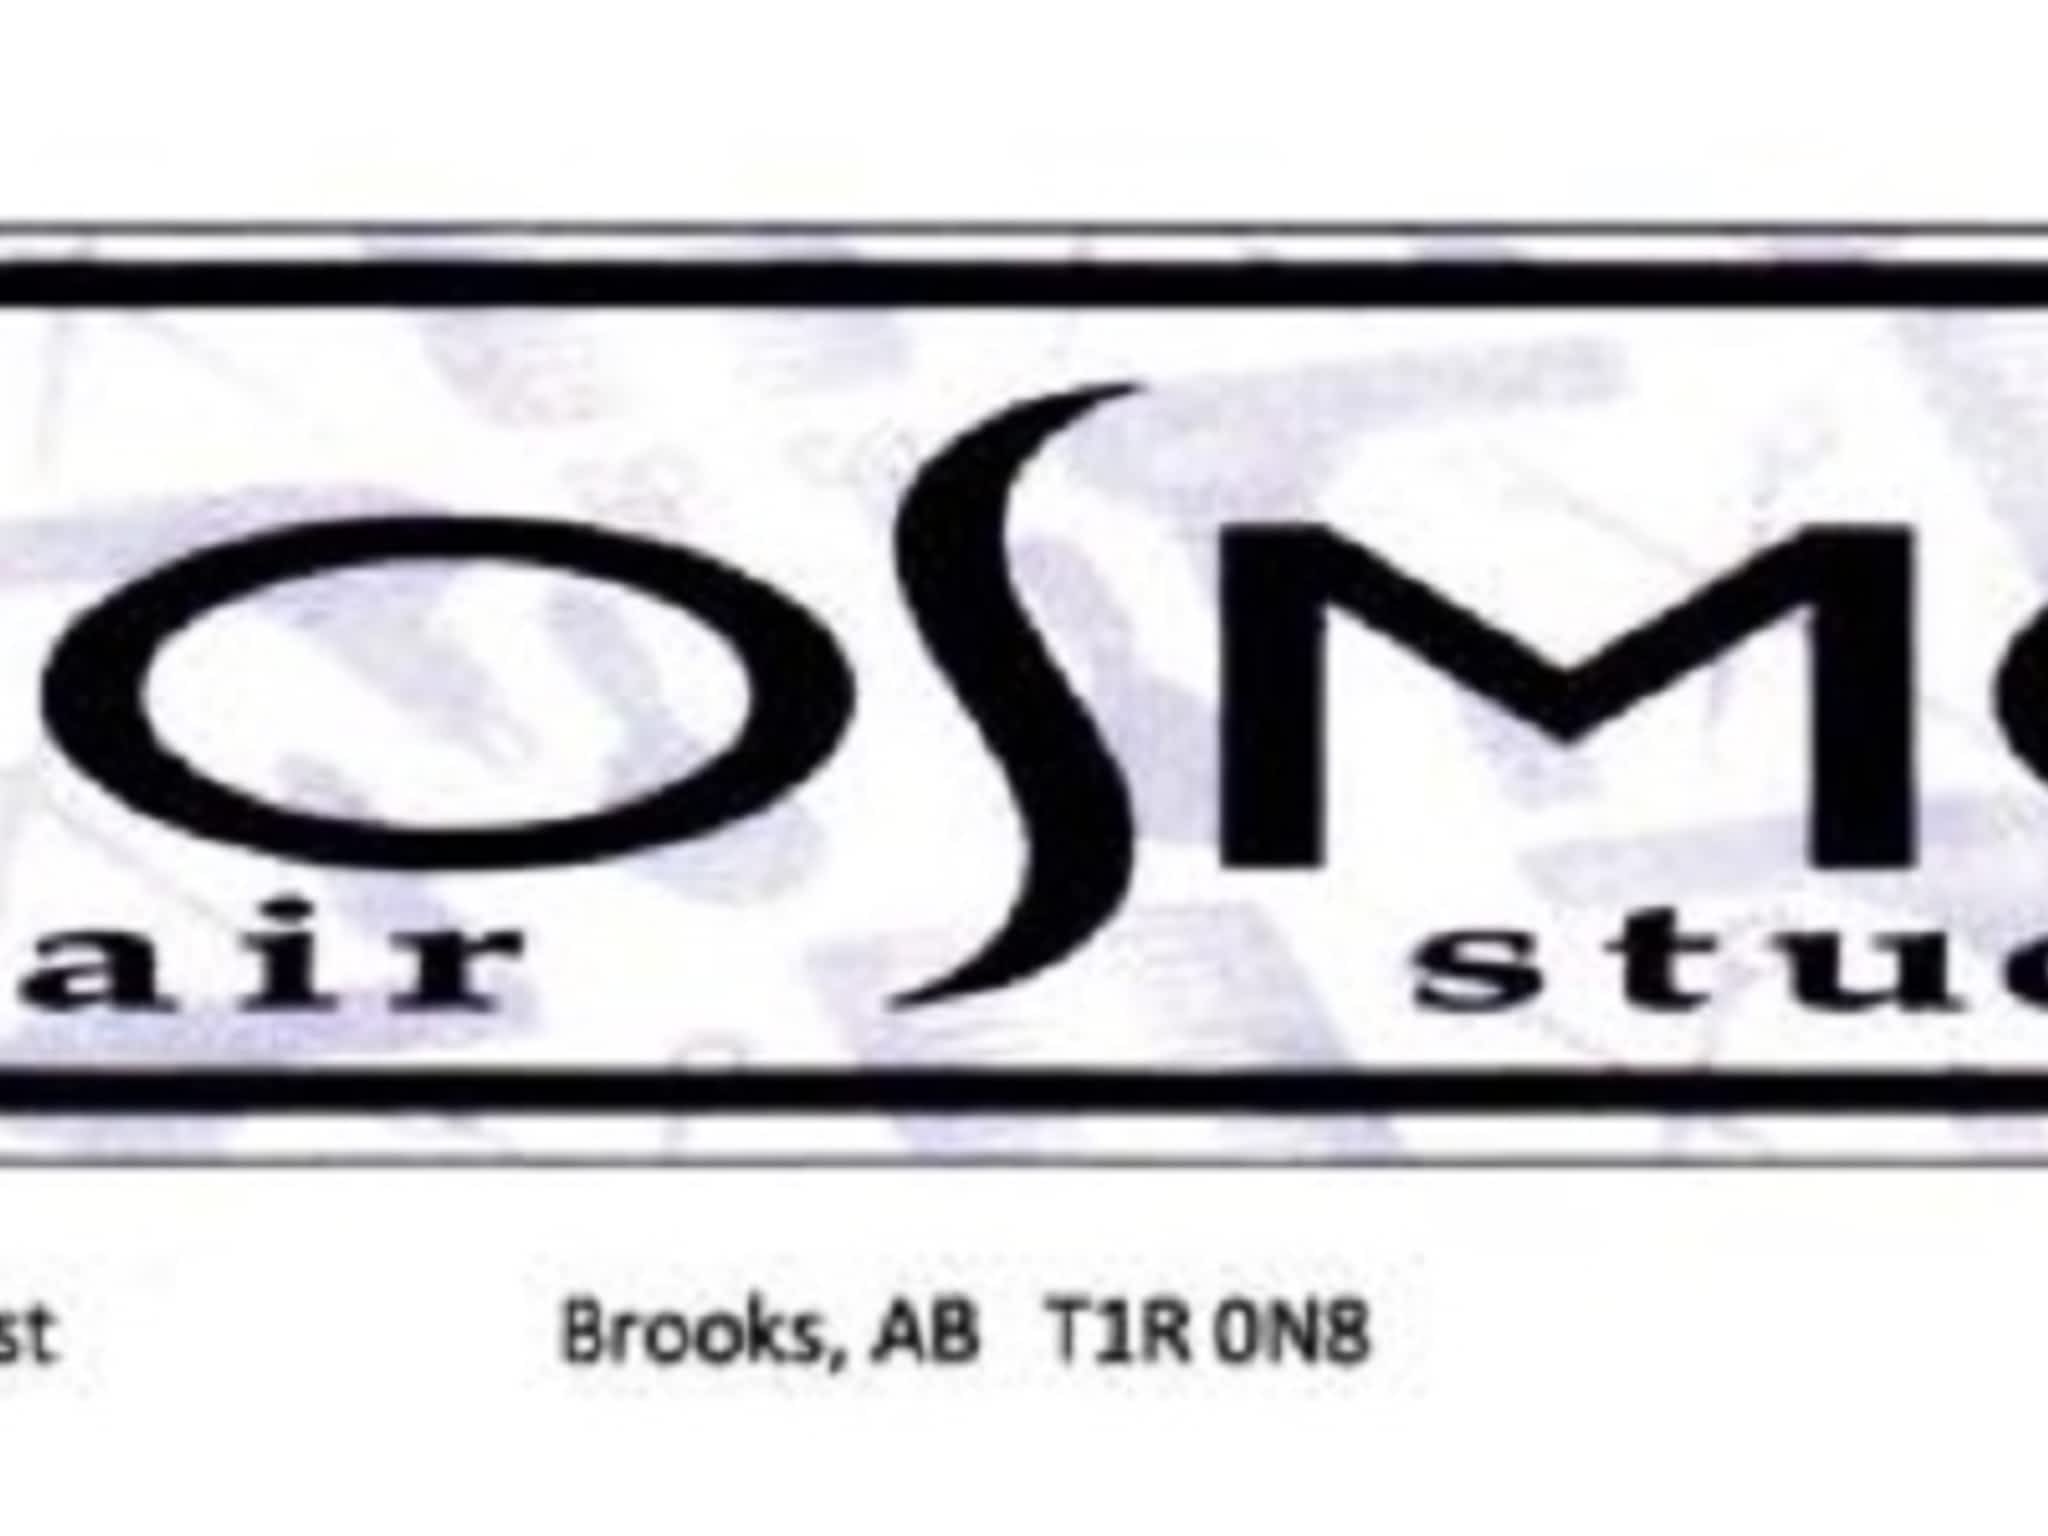 photo Cosmo Hair Studio 1981 Ltd